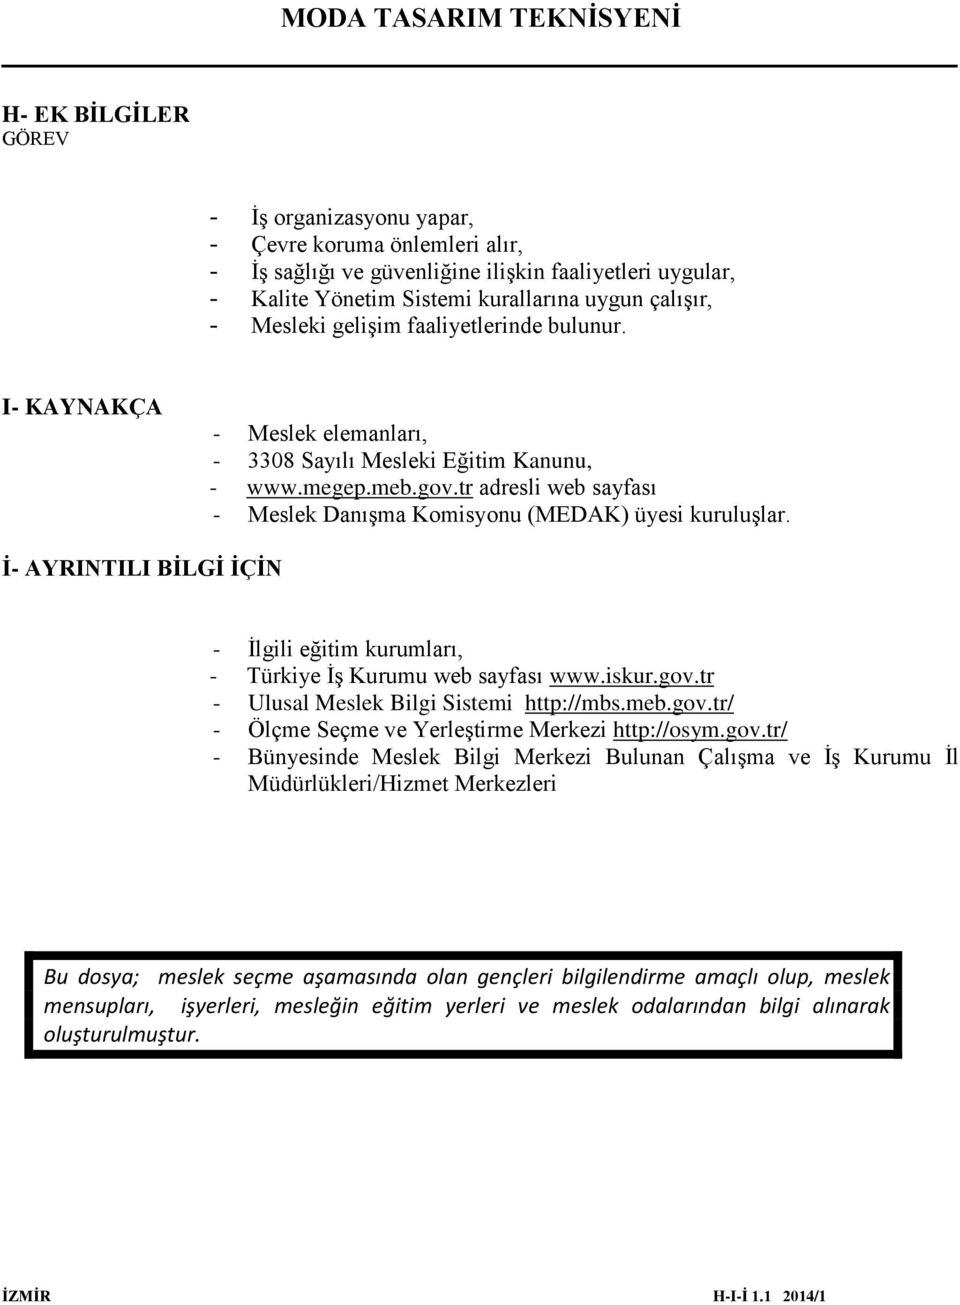 İ- AYRINTILI BİLGİ İÇİN - İlgili eğitim kurumları, - Türkiye İş Kurumu web sayfası www.iskur.gov.tr - Ulusal Meslek Bilgi Sistemi http://mbs.meb.gov.tr/ - Ölçme Seçme ve Yerleştirme Merkezi http://osym.